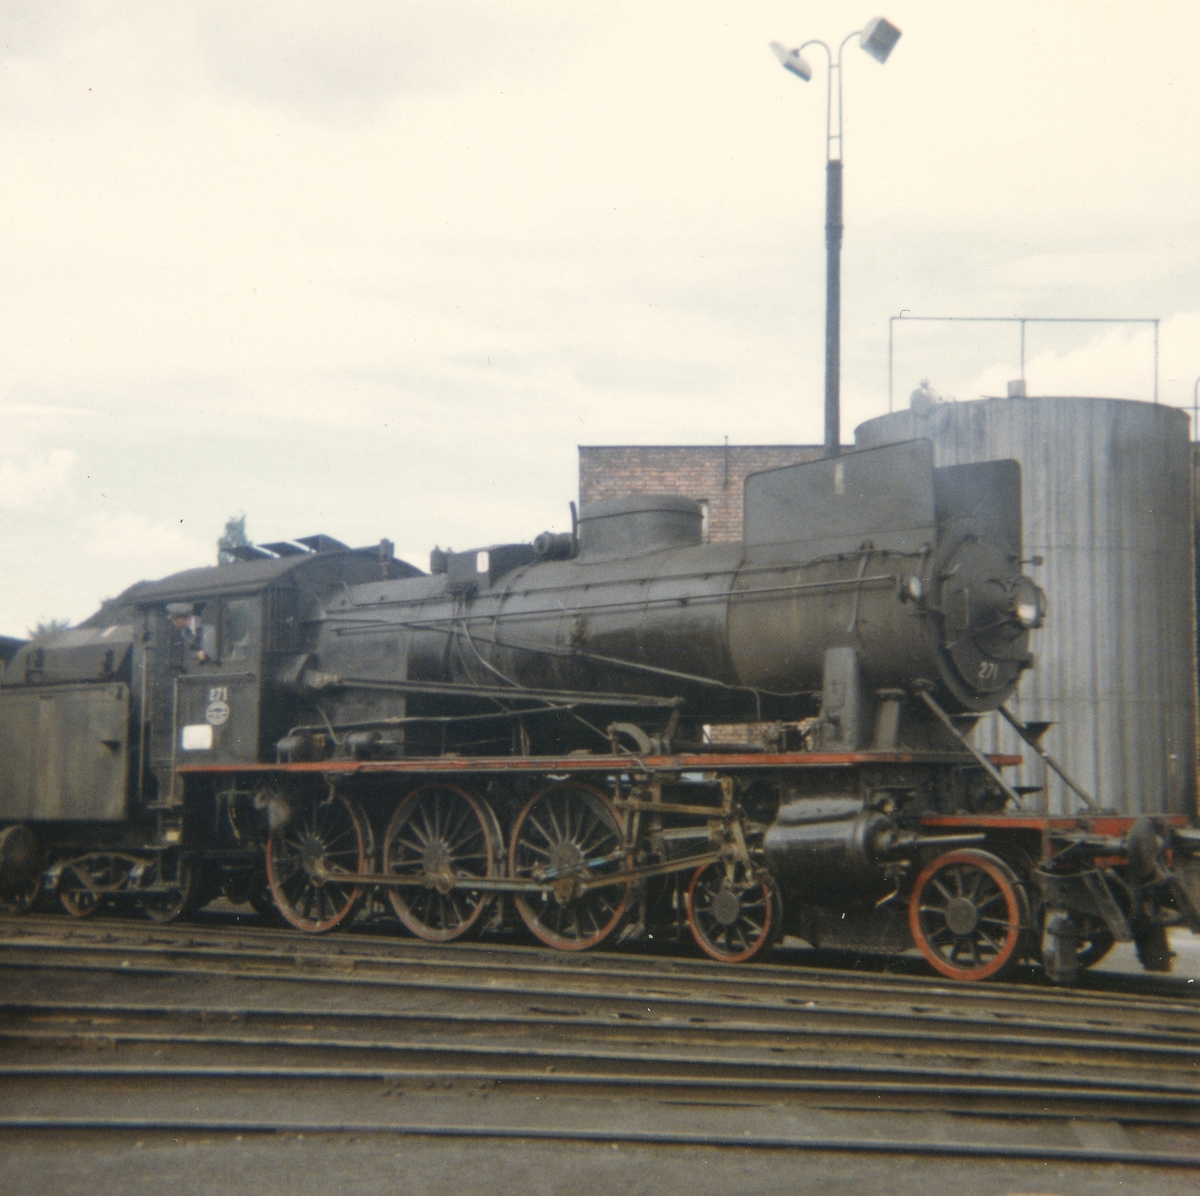 Damplokomotiv type 30a 271 ved lokomotivstallen på Hamar.